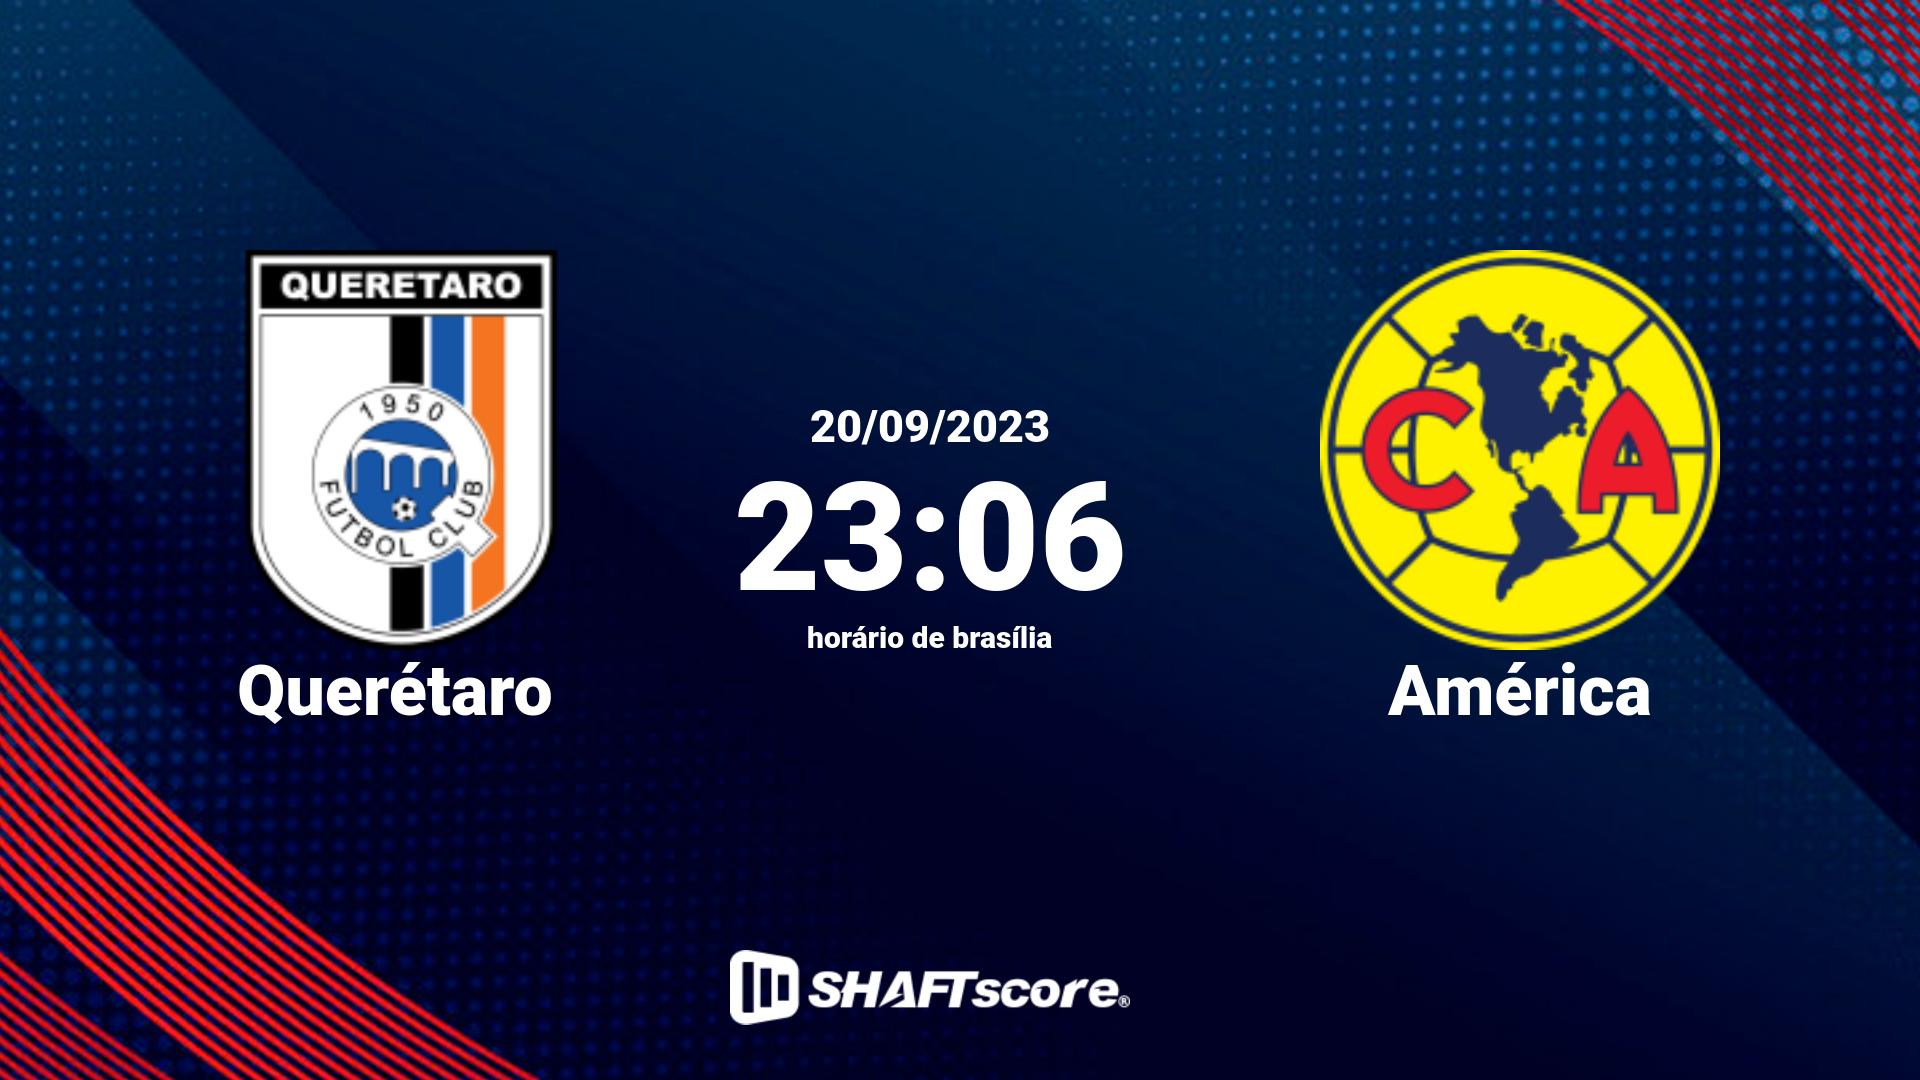 Estatísticas do jogo Querétaro vs América 20.09 23:06